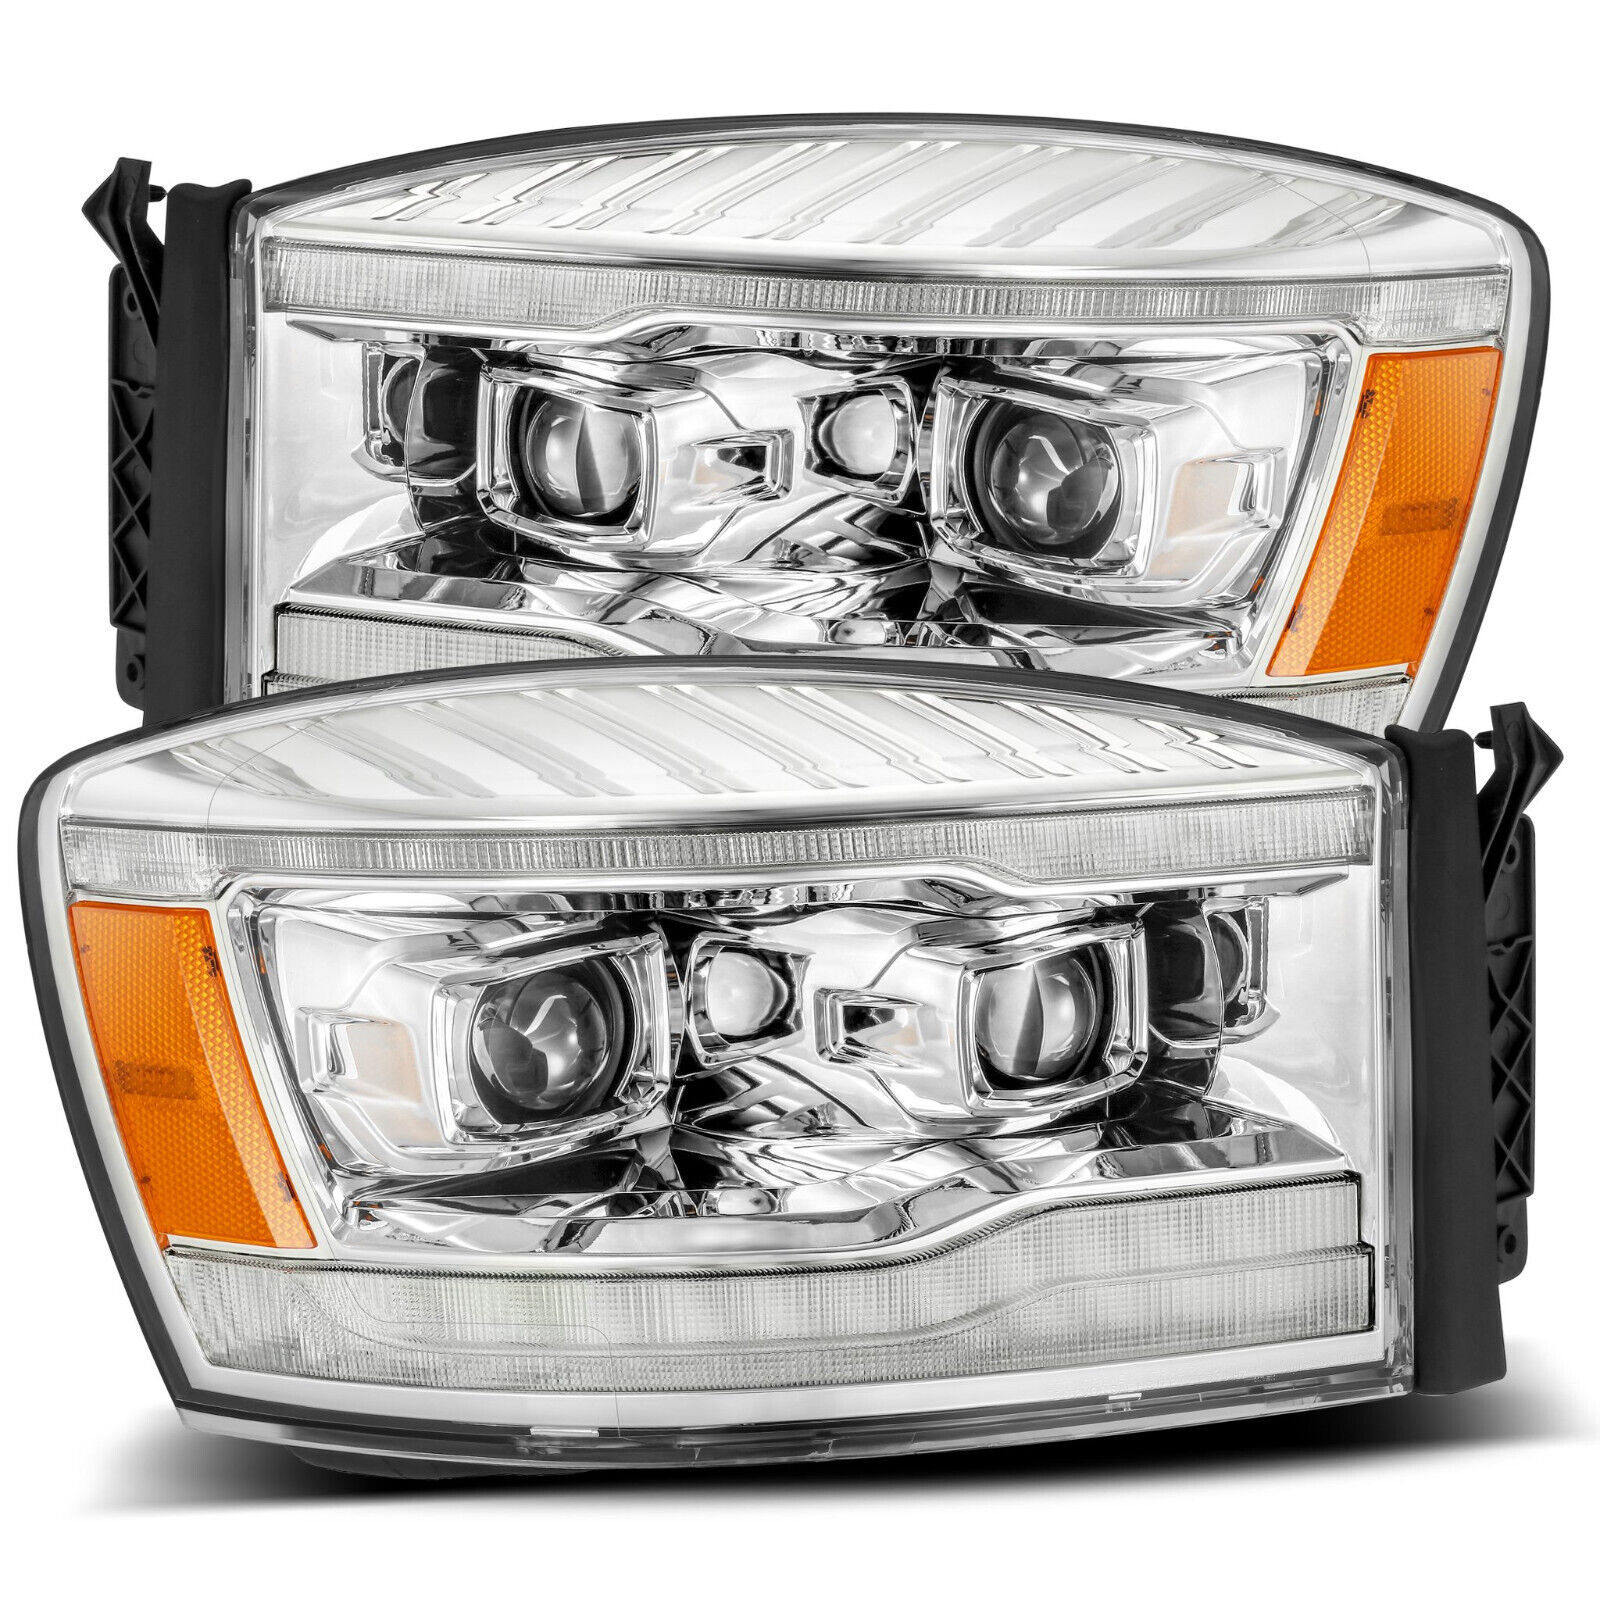 For 06-08 Dodge Ram 1500 2500 3500 Luxx Chrome LED Projector Headlight Headlamp